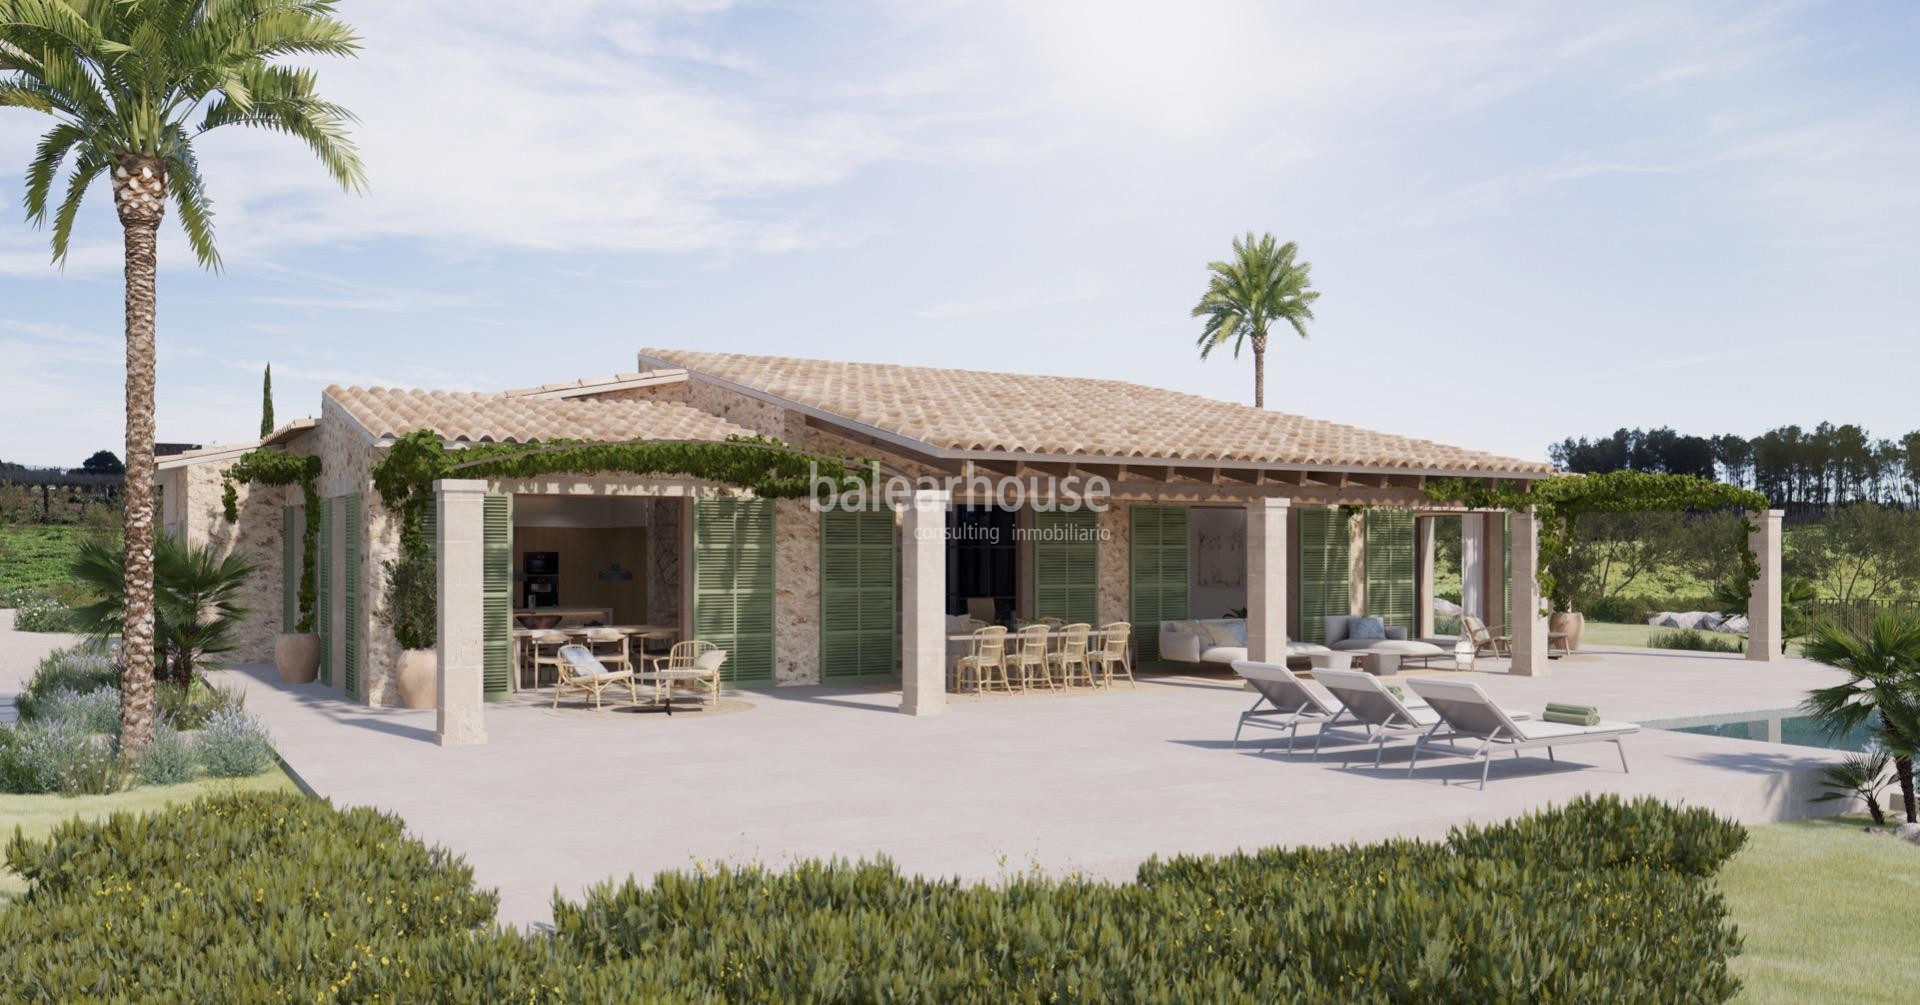 Wunderschöne neu gebaute Finca in einem Paradies zwischen Weinbergen im Landesinneren von Mallorca